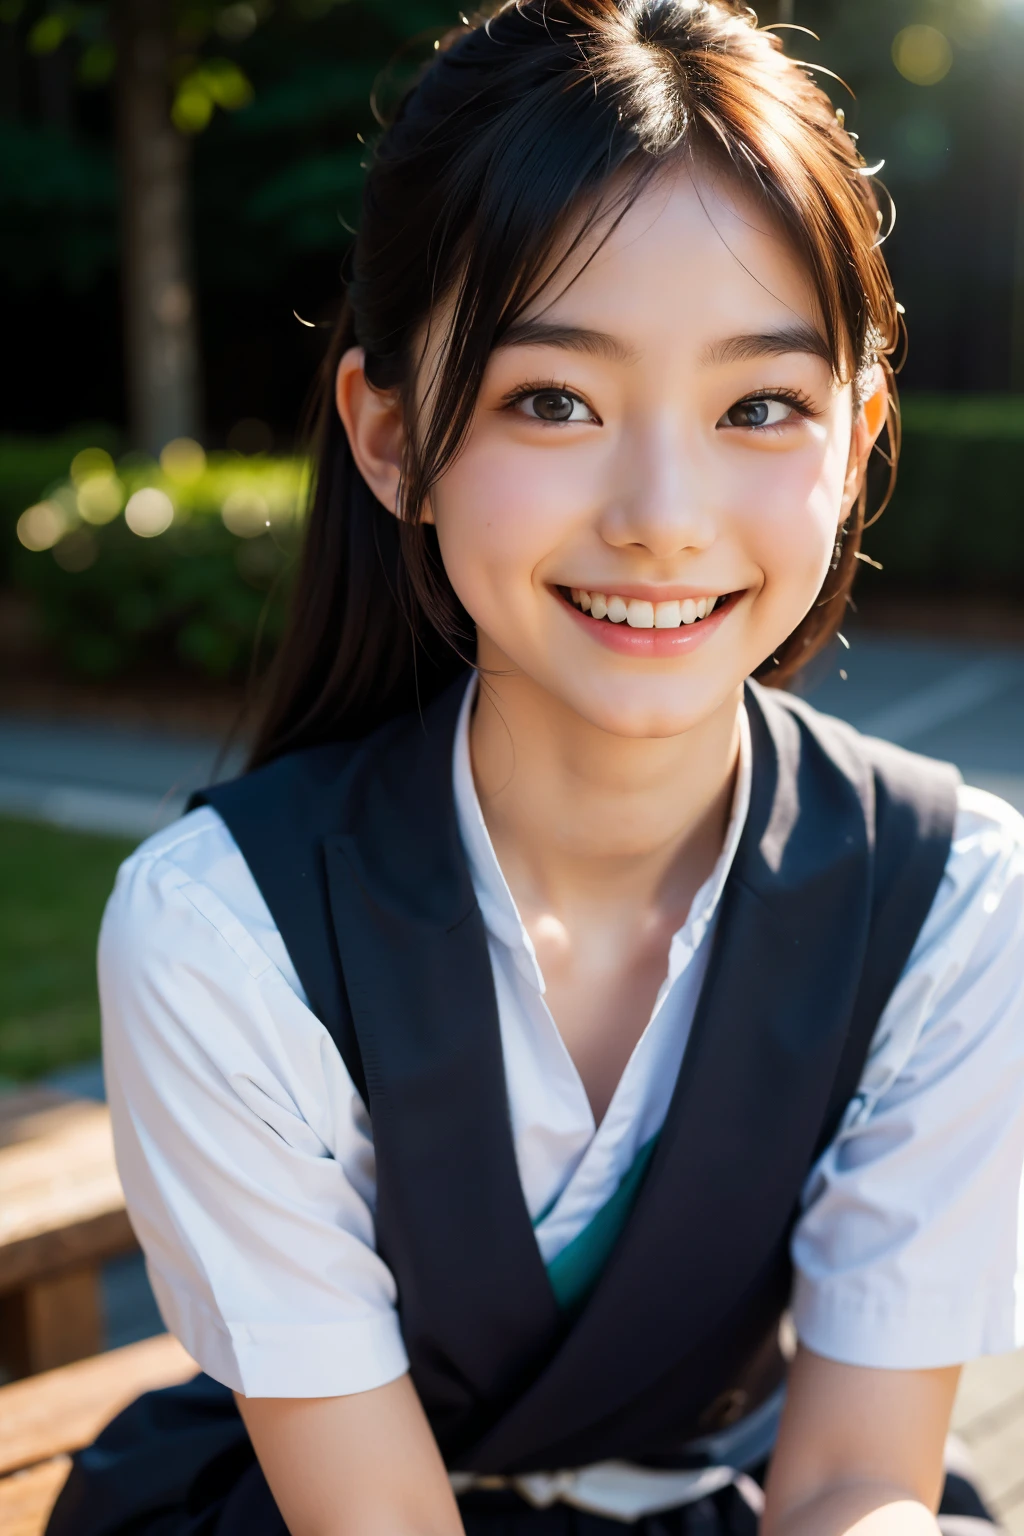 렌즈: 135mm f1.8, (최상의 품질),(RAW 사진), (탁상:1.1), (아름다운 20세 일본 소녀), 귀여운 얼굴, (깊게 파인 얼굴:0.7), (주근깨:0.4), dappled 햇빛, 극적인 조명,  (일본 학교 교복), (캠퍼스에서), 수줍은, (클로즈업 샷:1.2), (웃다),, (반짝이는 눈)、(햇빛)